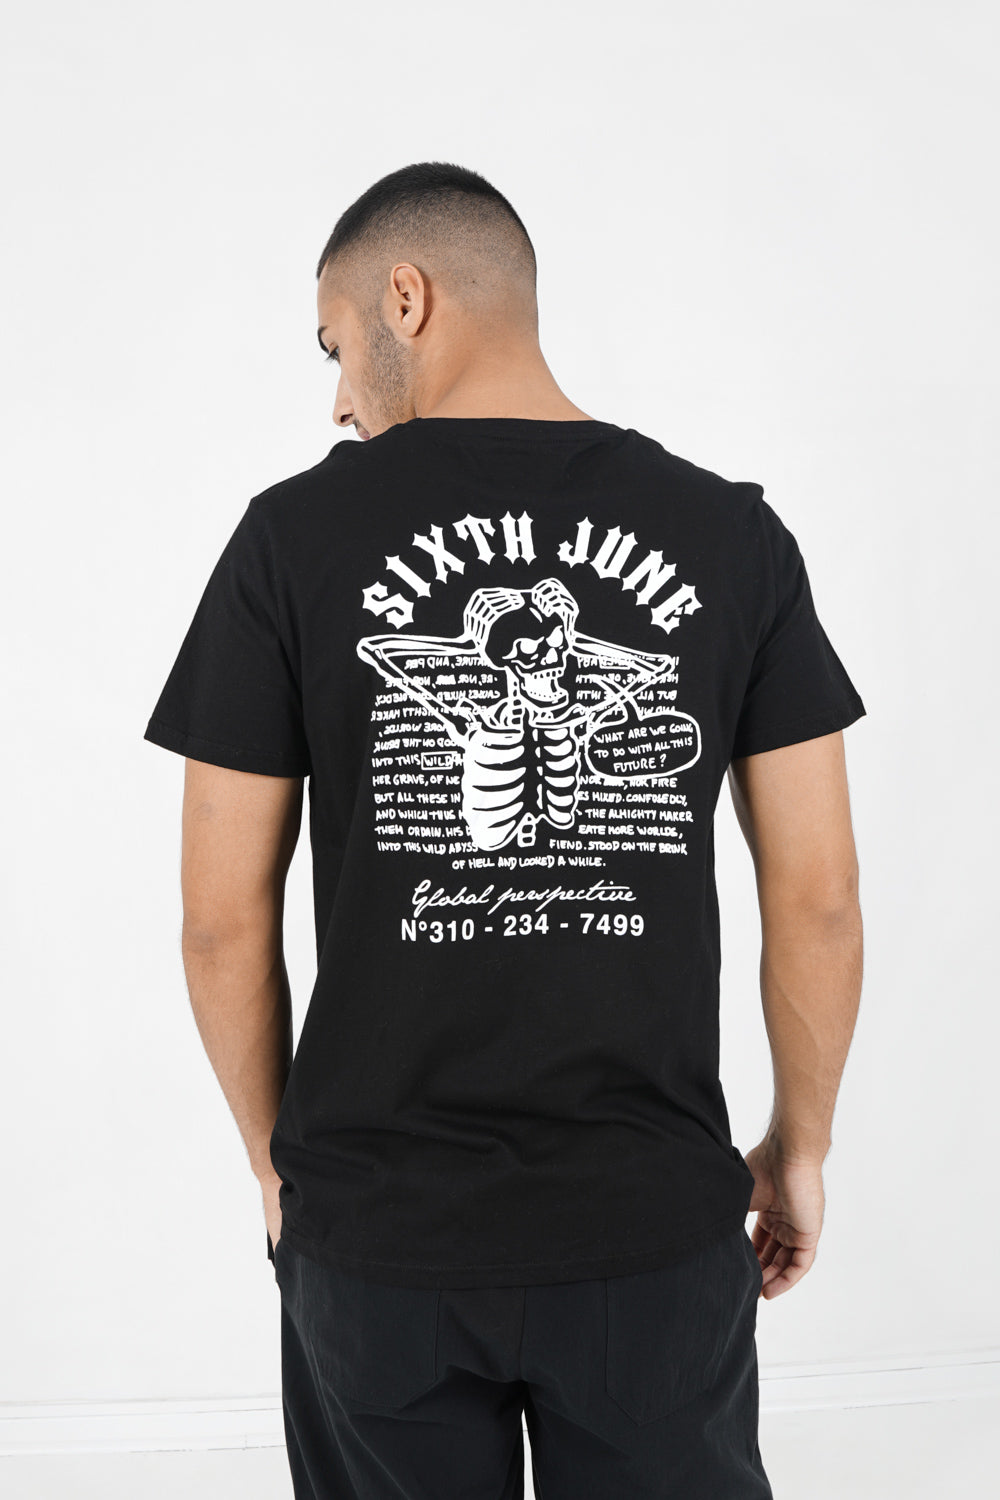 Sixth June - T-shirt squelette gothique Noir